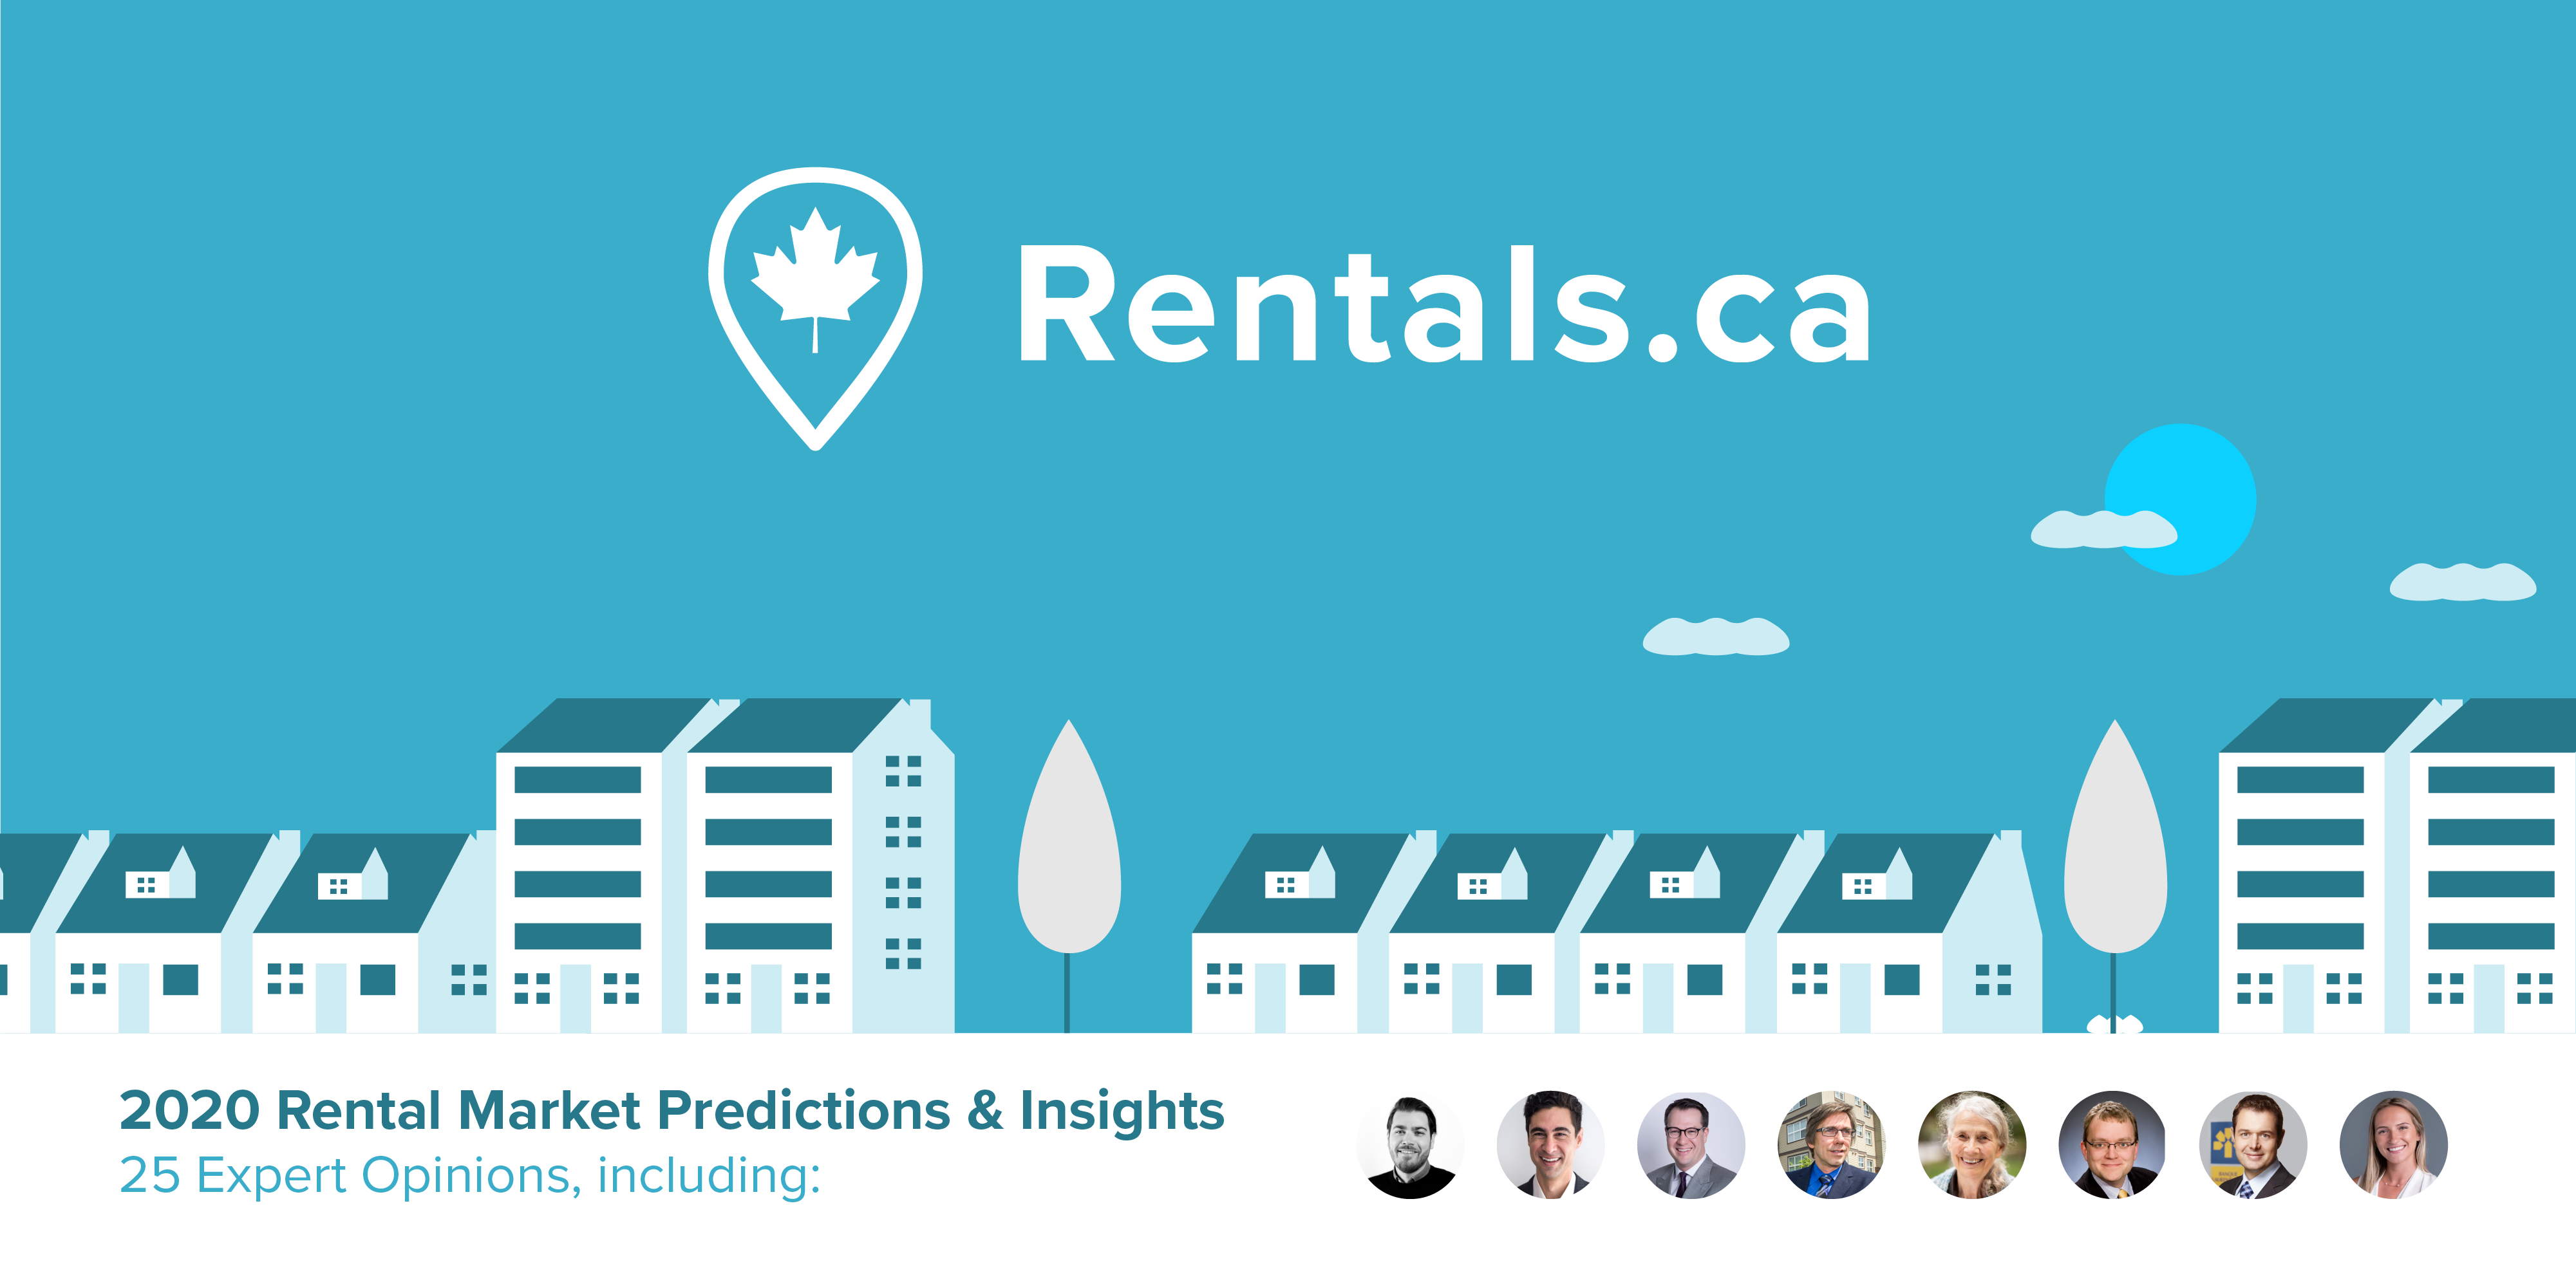 Rentals.ca 2020 Rental Market Predictions From Experts Across Canada